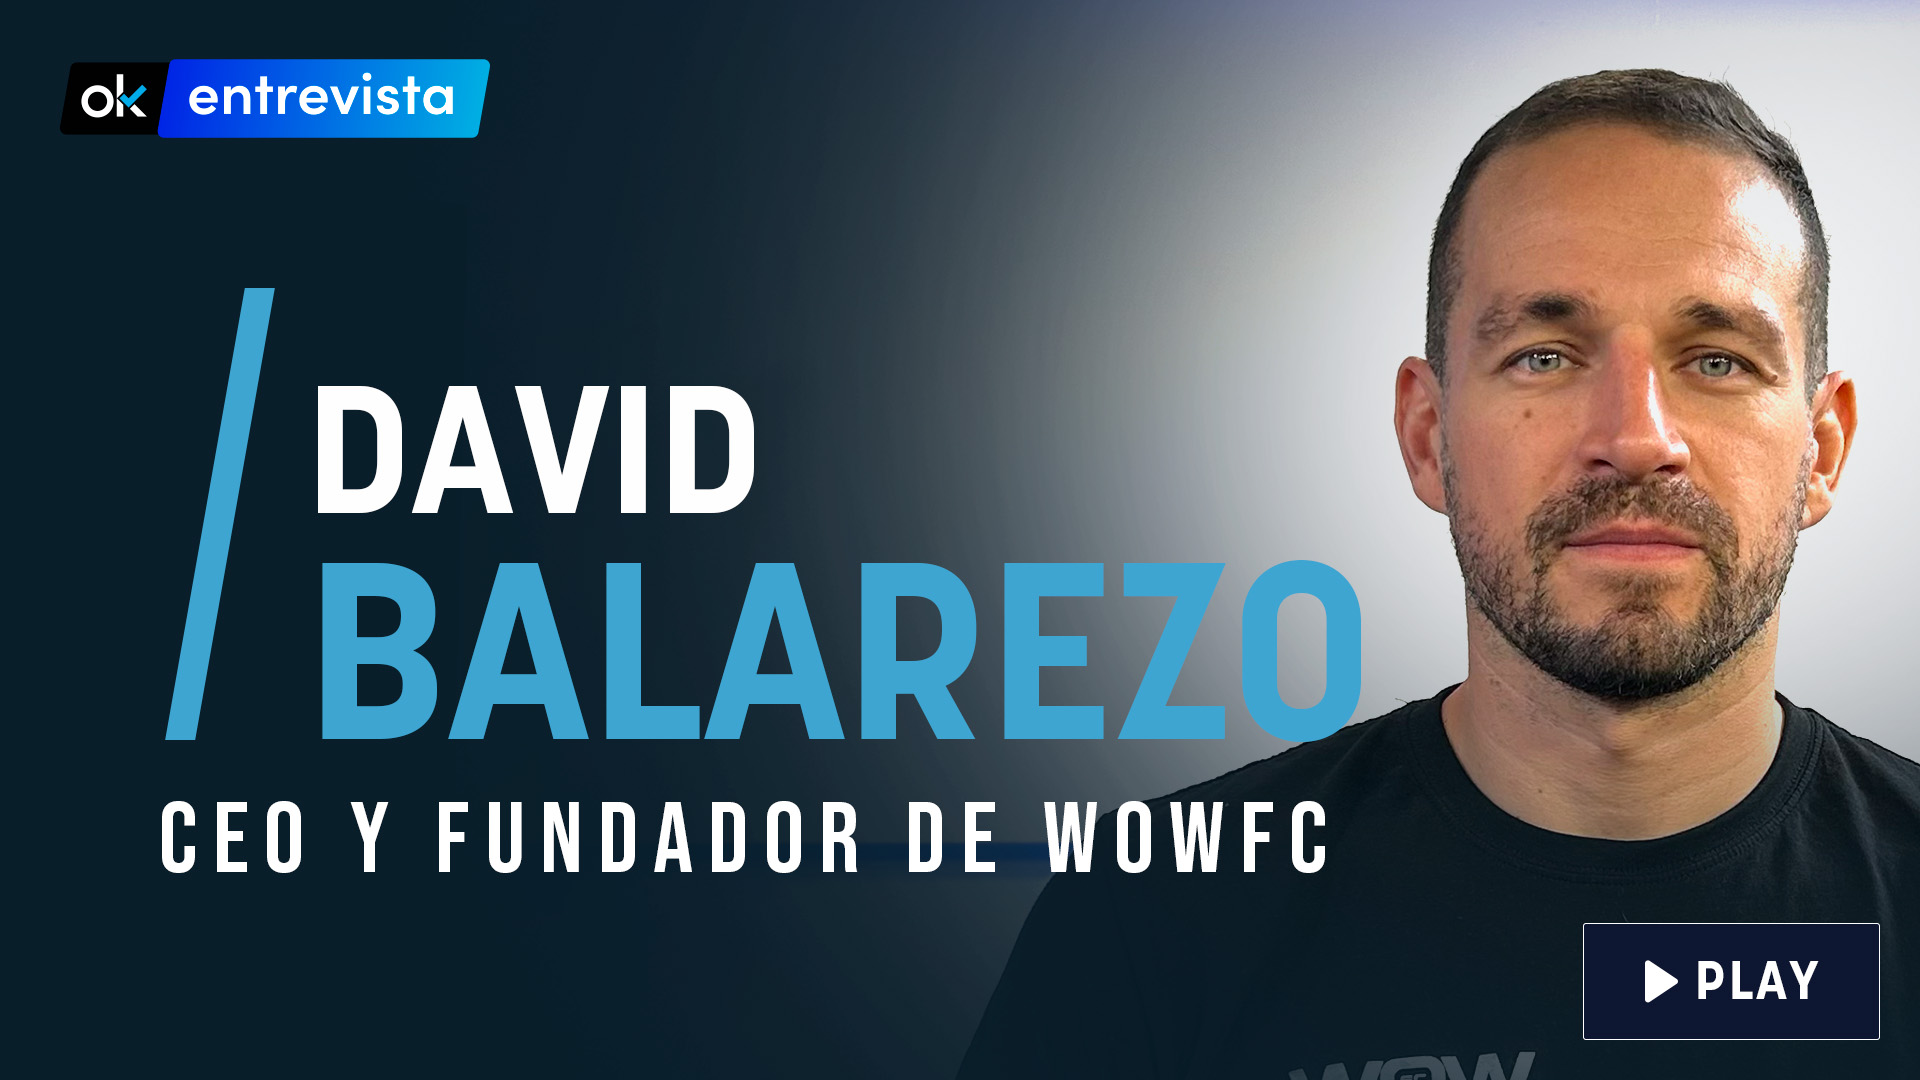 David Balarezo es la cara visible de WOWfc.